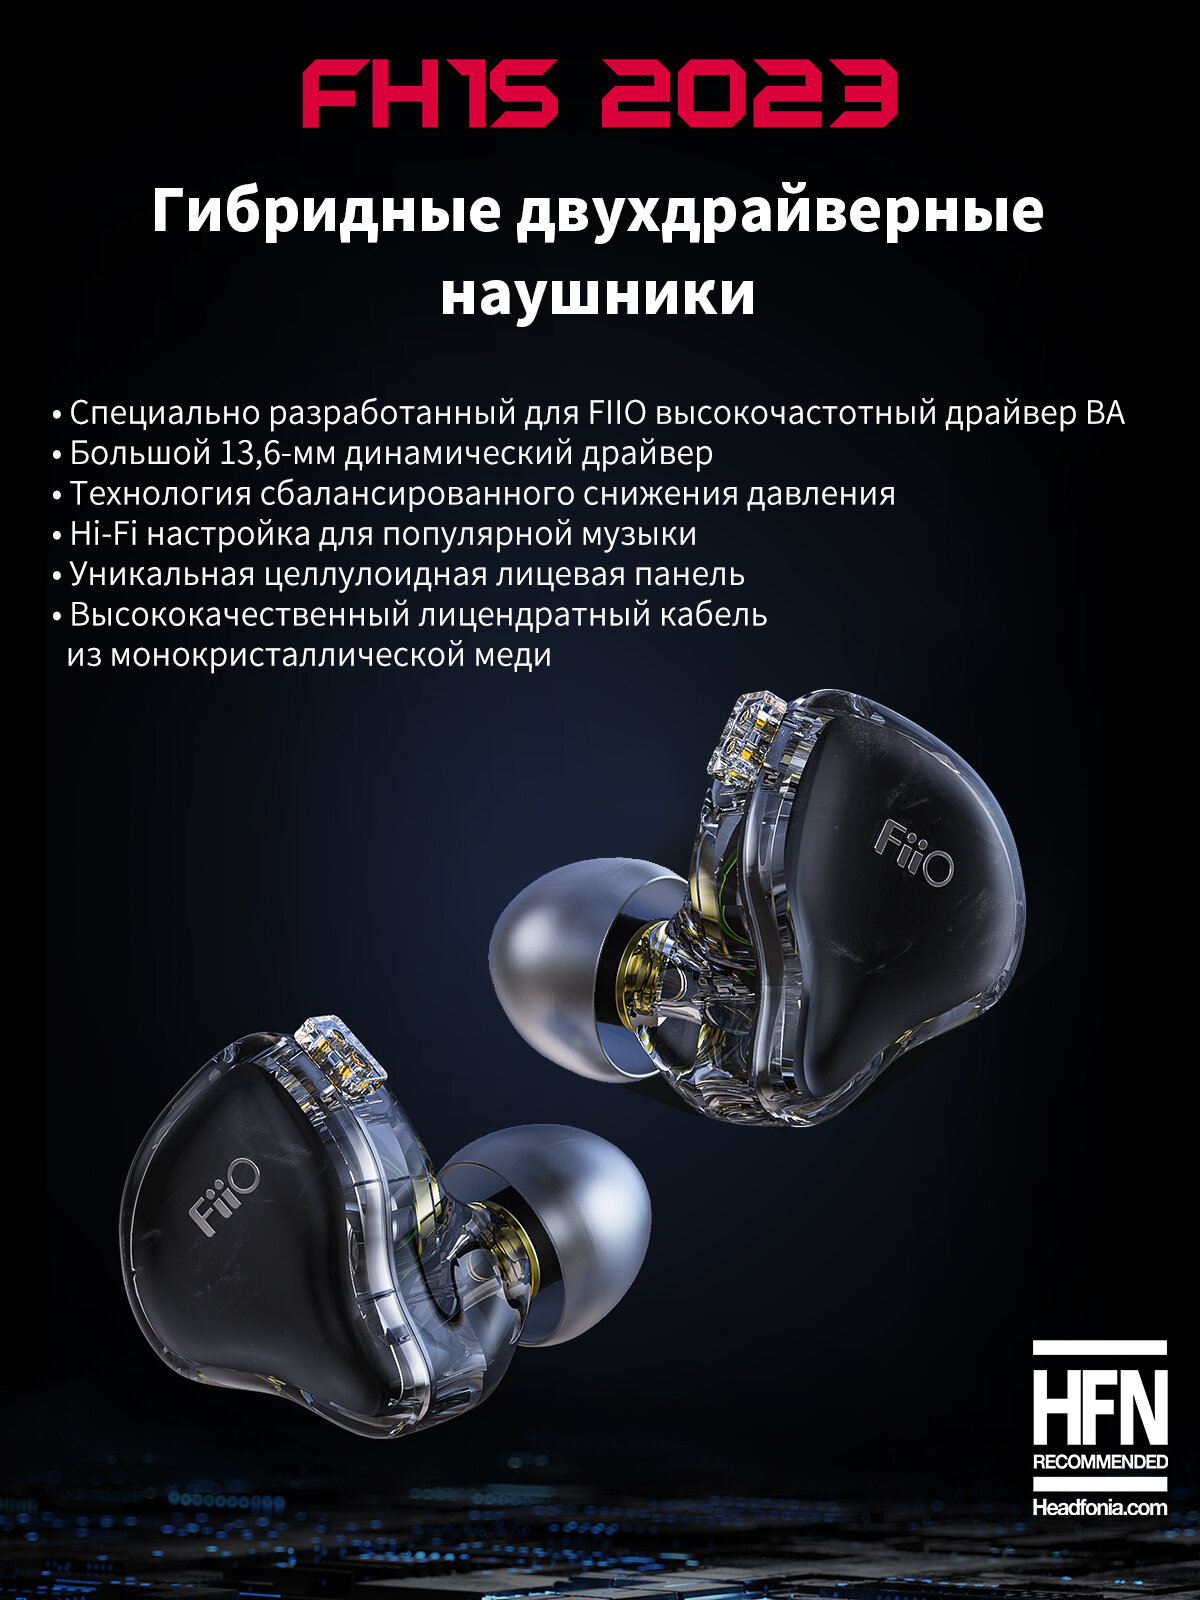 Наушники FIIO вставные, 20Гц-40кГц, 26 Ом, 106 дБ, штекер: 3,5 мм, кабель: 1.2 м - фото №2